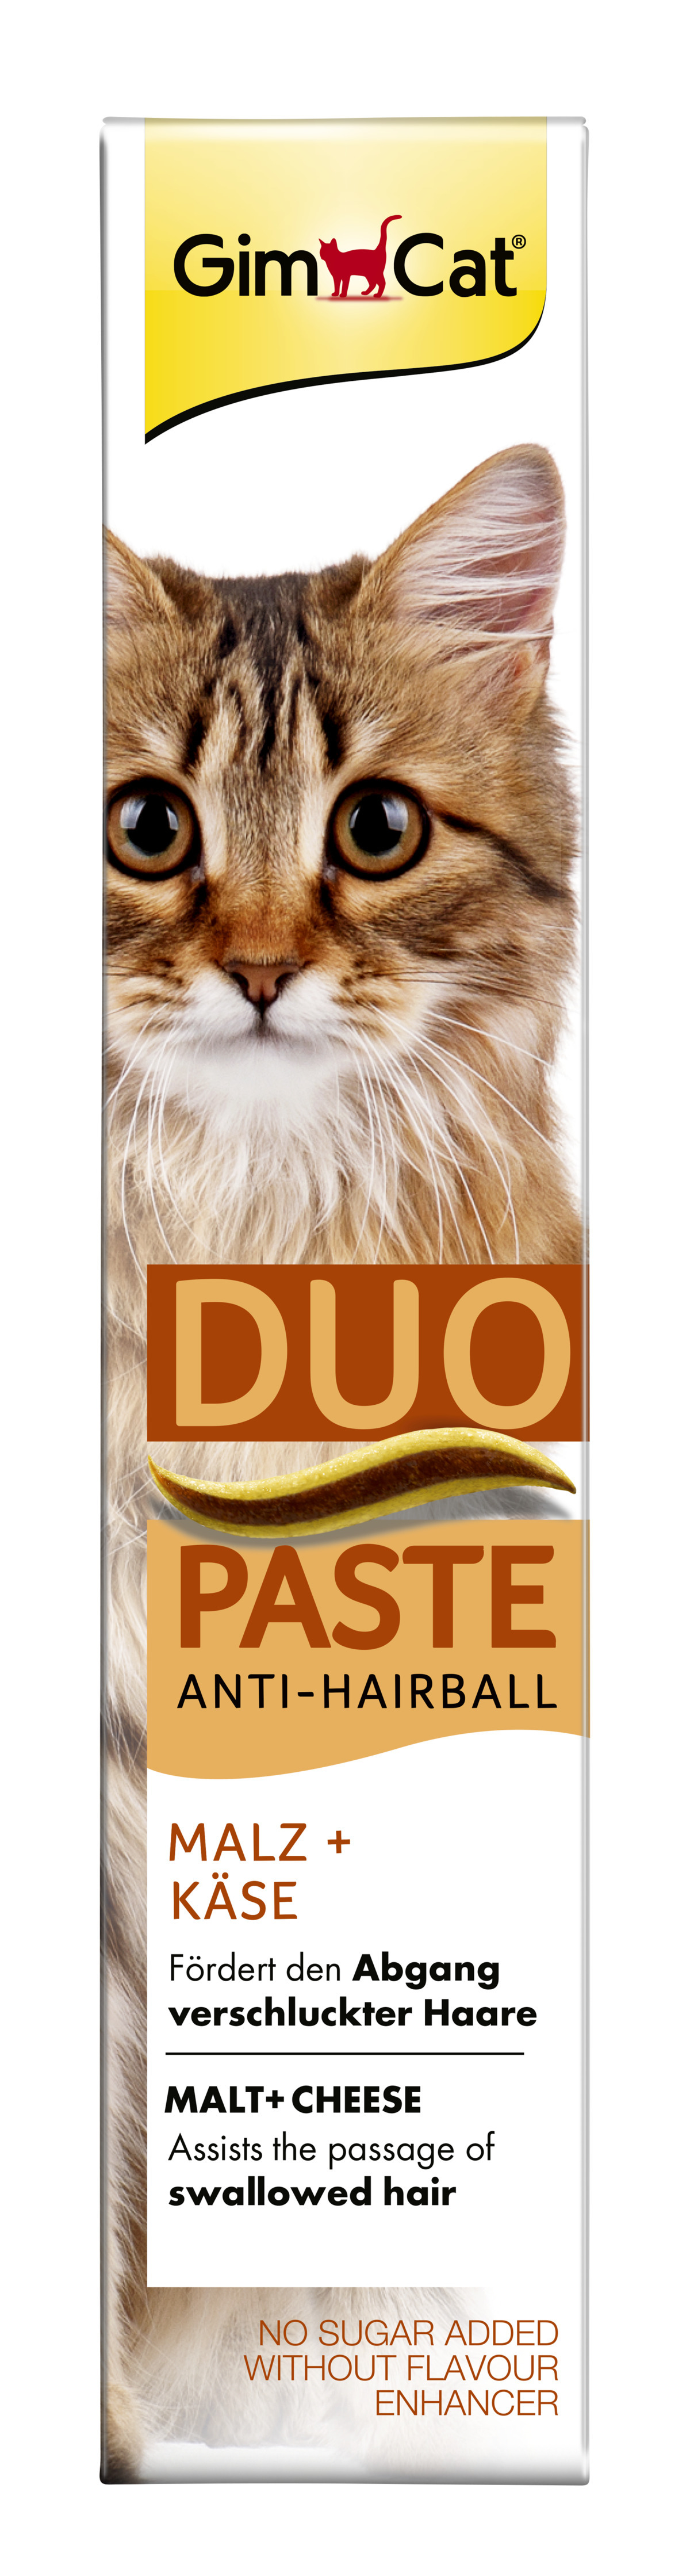 Duo-Paste 2x50g Anti-Hairball Käse + Malz